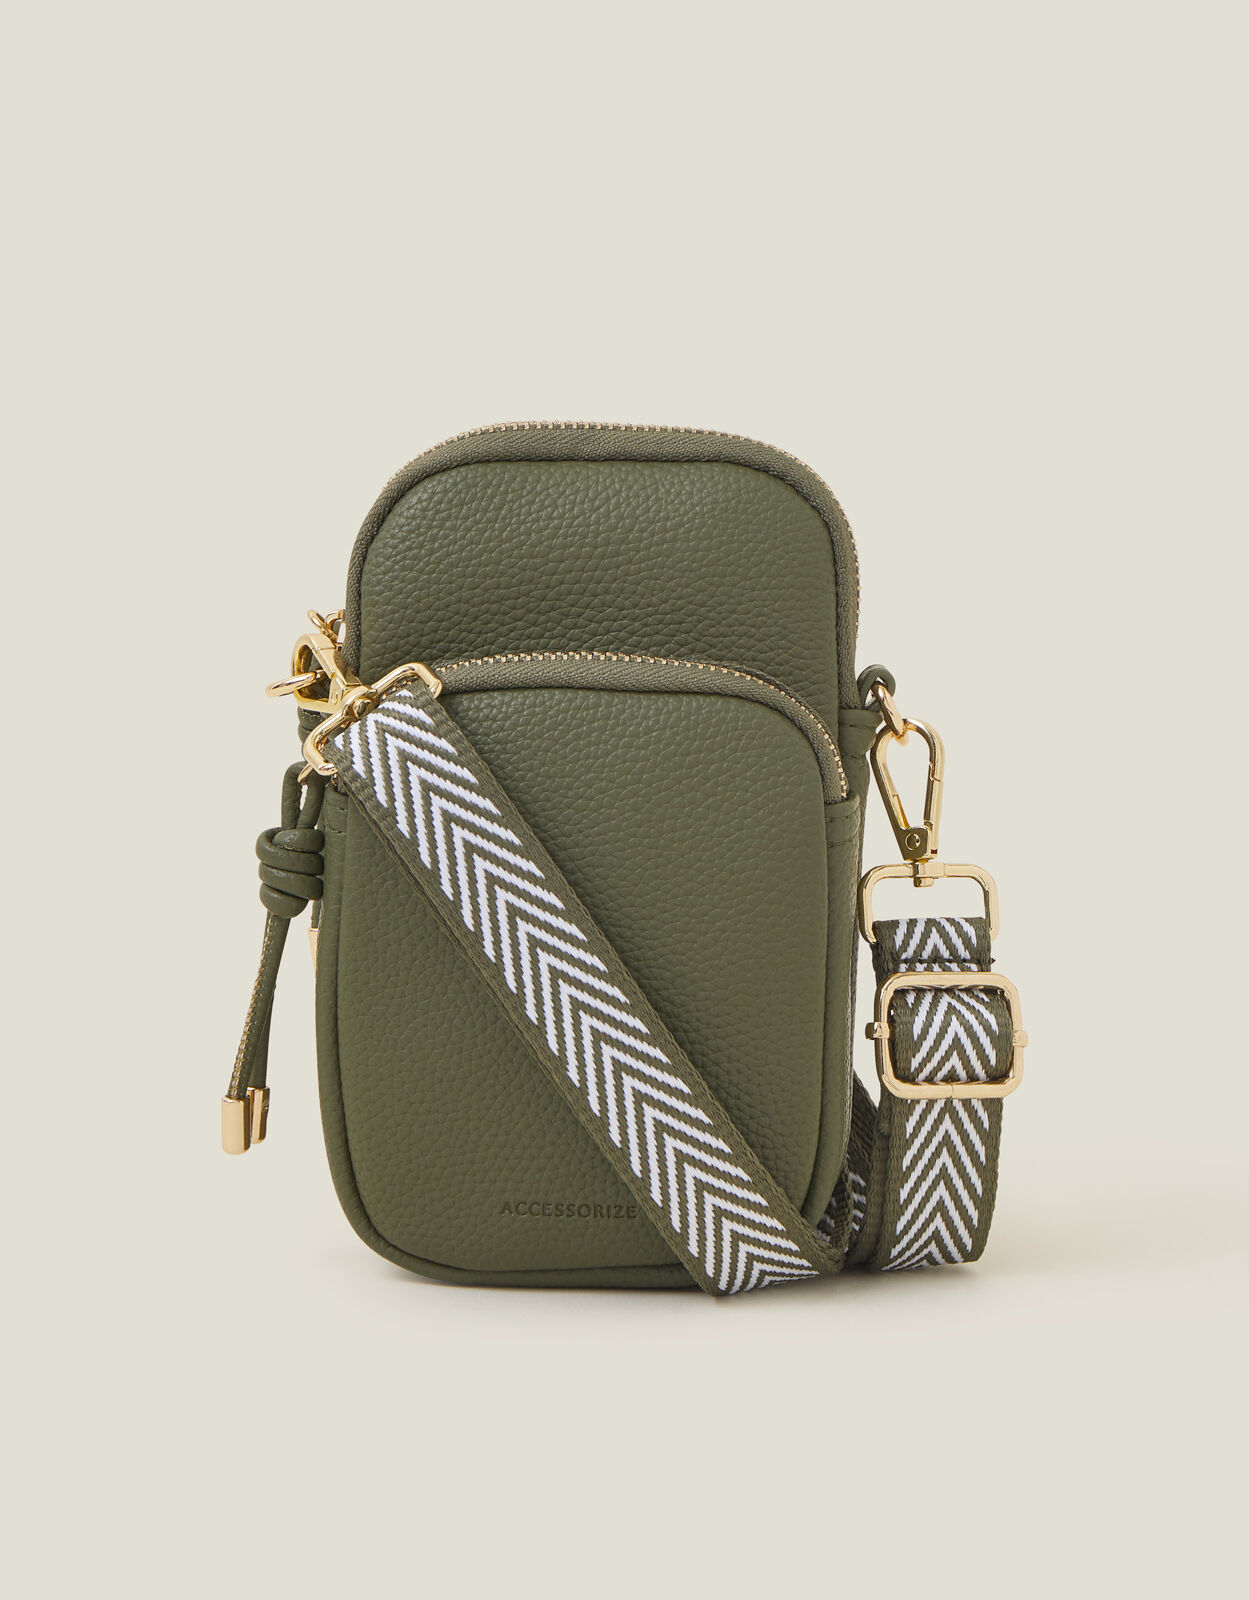 Buy Accessorize London Lauren Handbag online